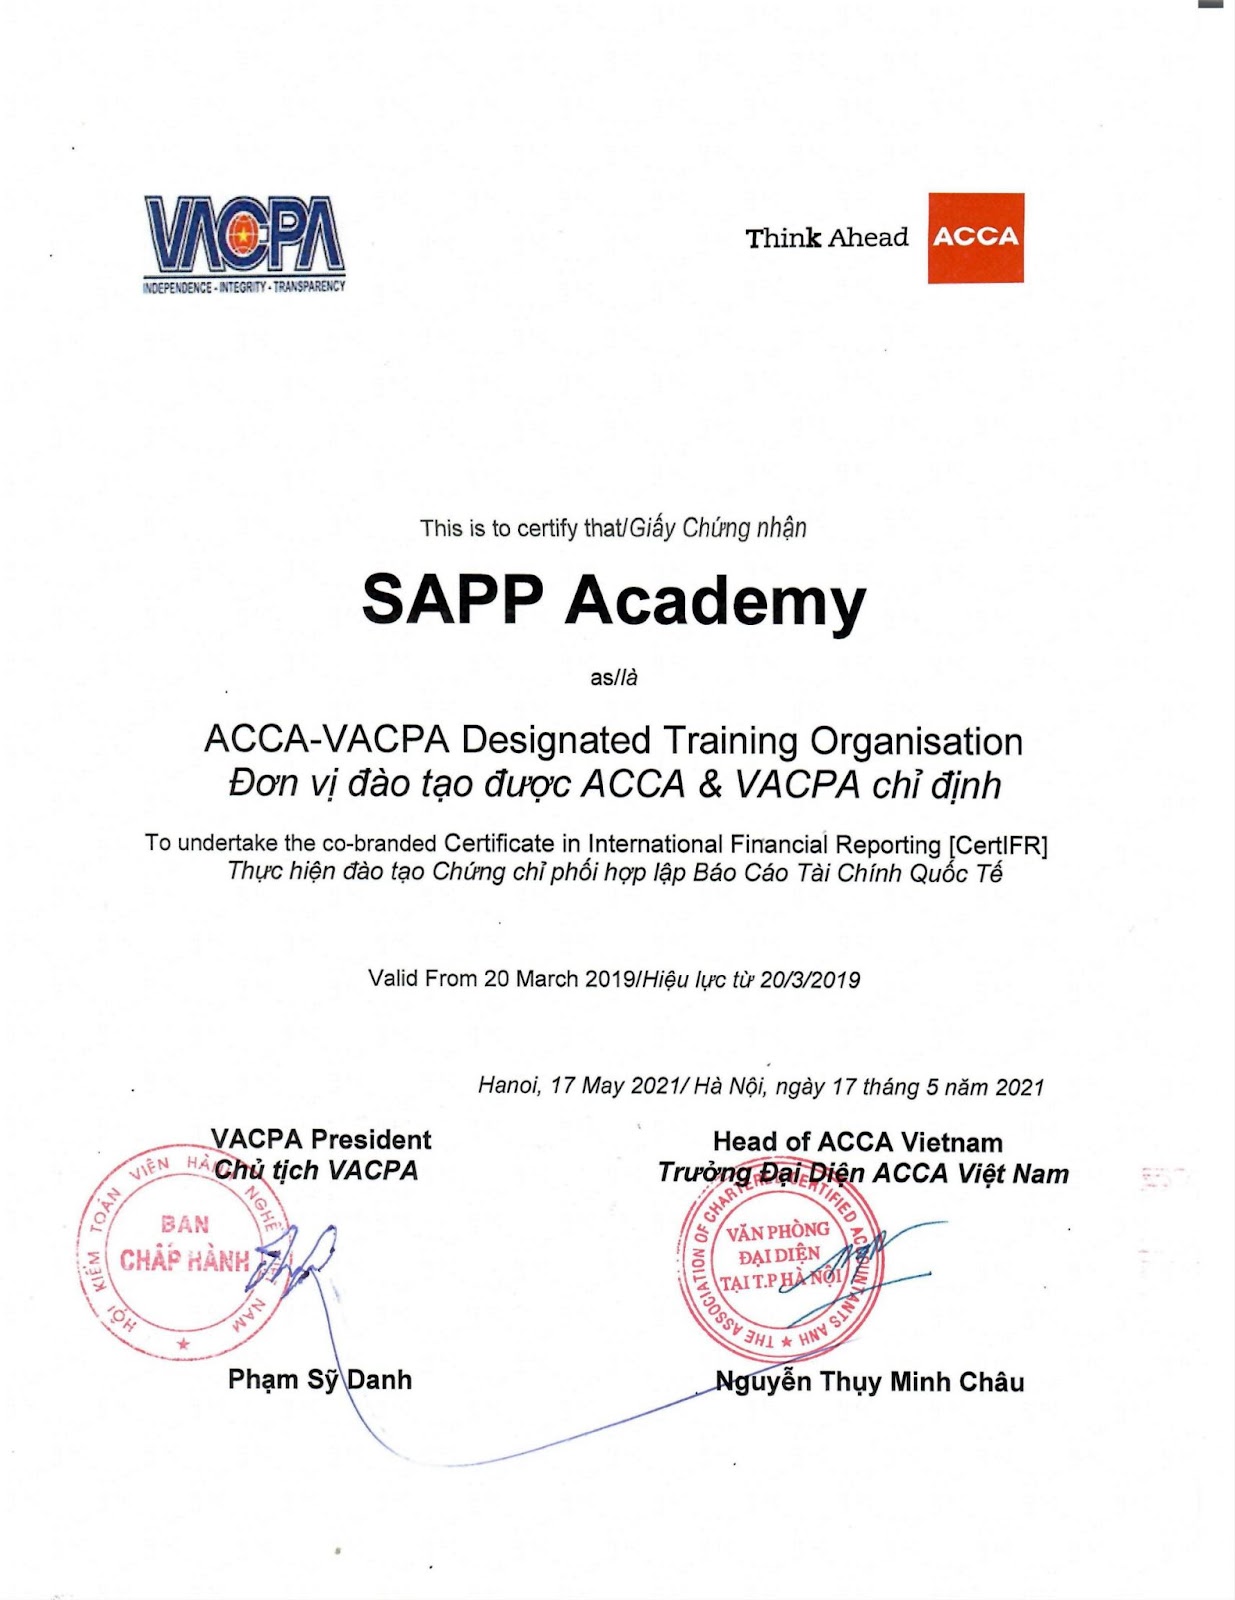 SAPP Academy đơn vị đào tạo được ACCA và VACPA chỉ định đào tạo chứng chỉ CertIFR